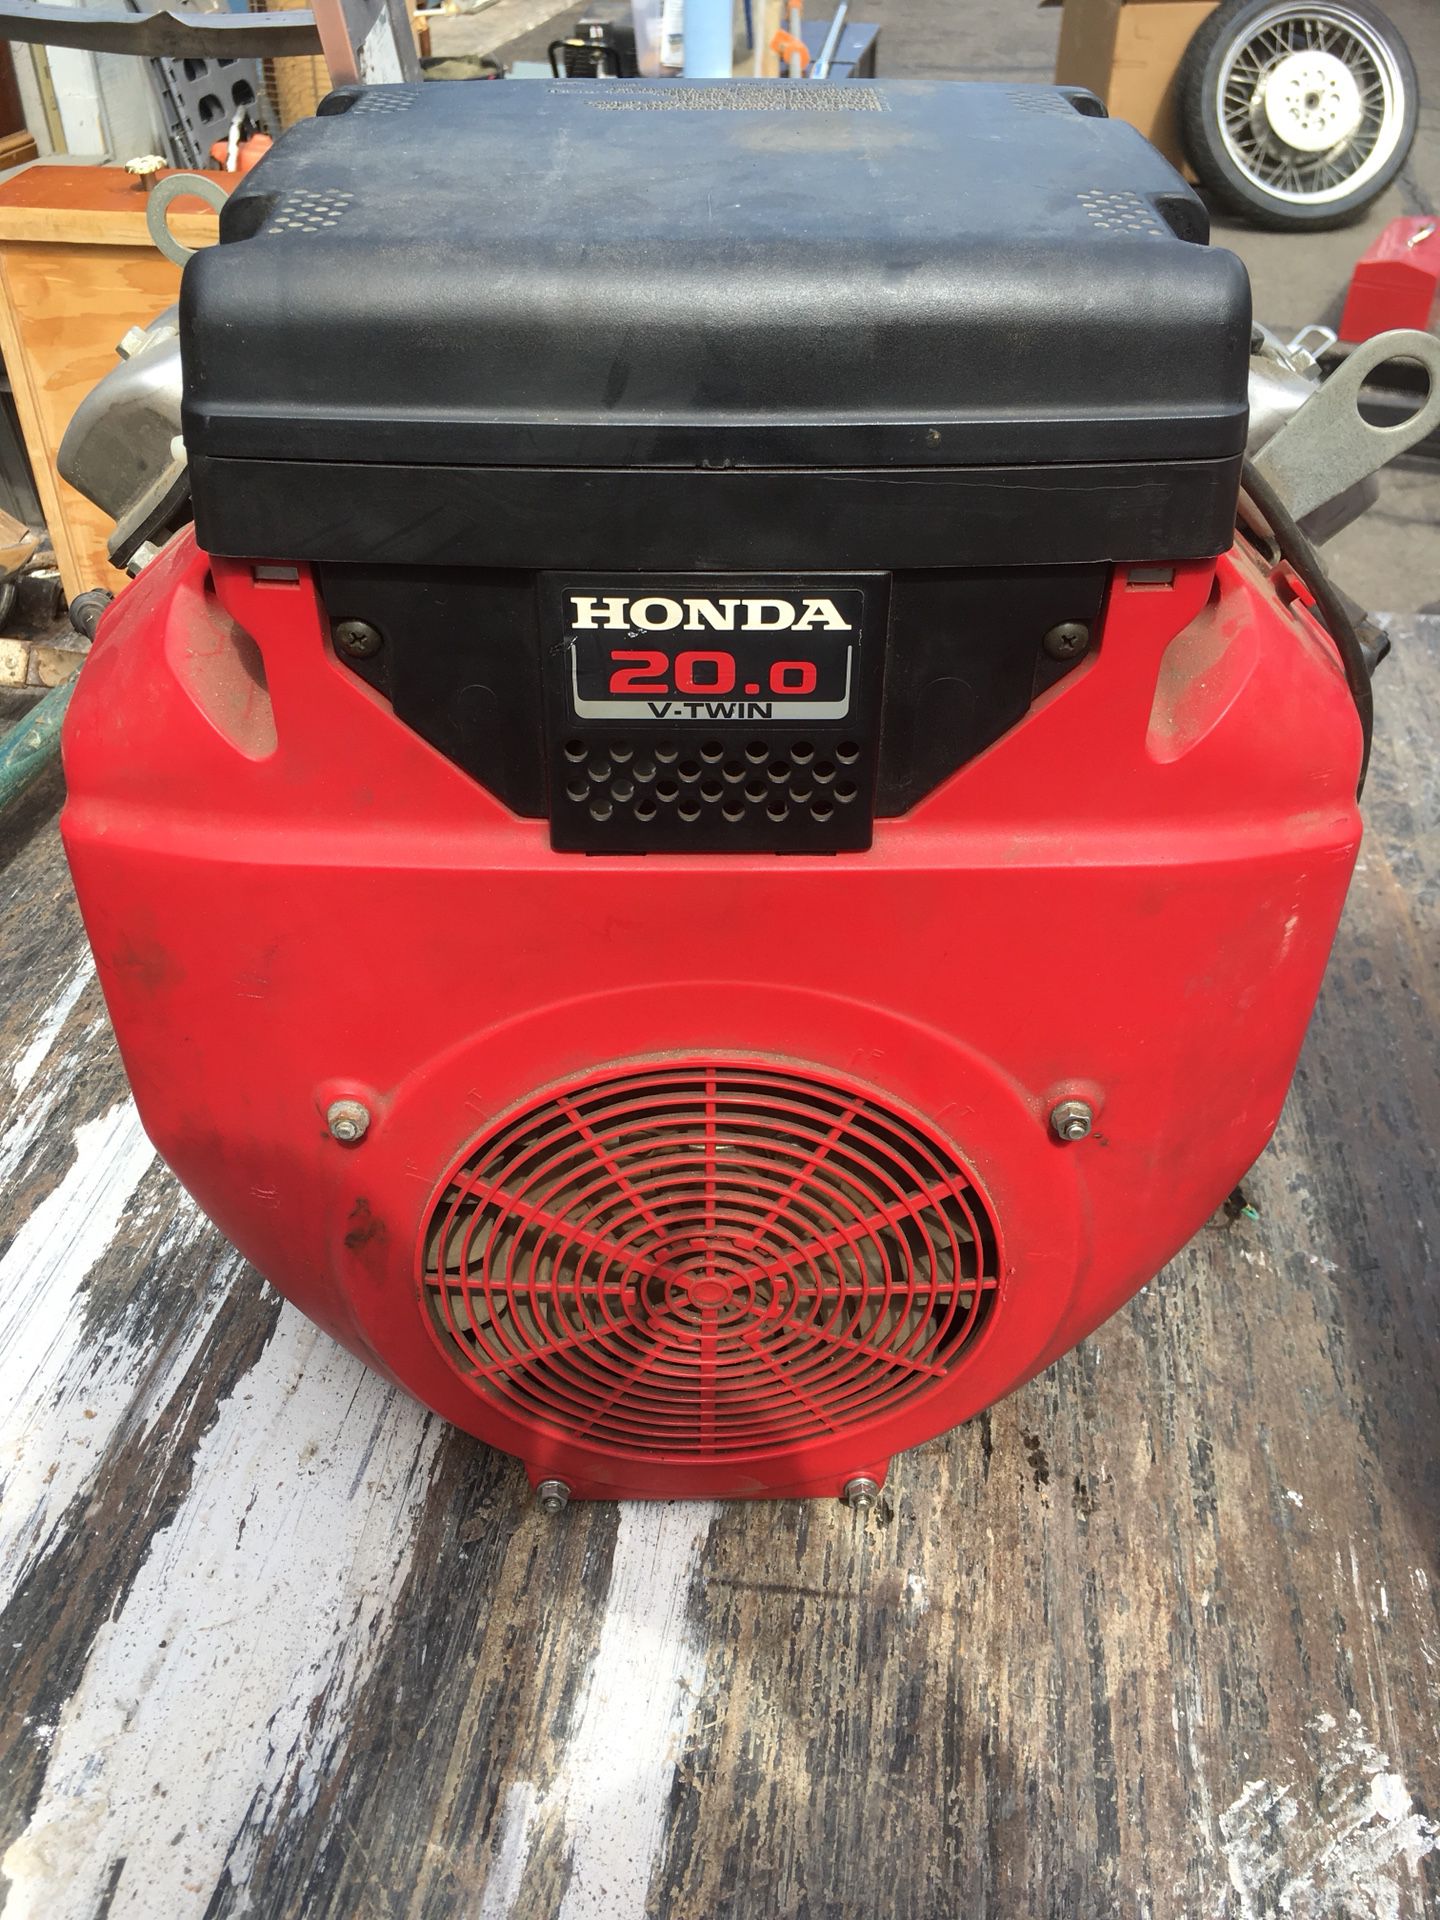 Honda GX620 Horizontal shaft 20 HP V-Twin Engine